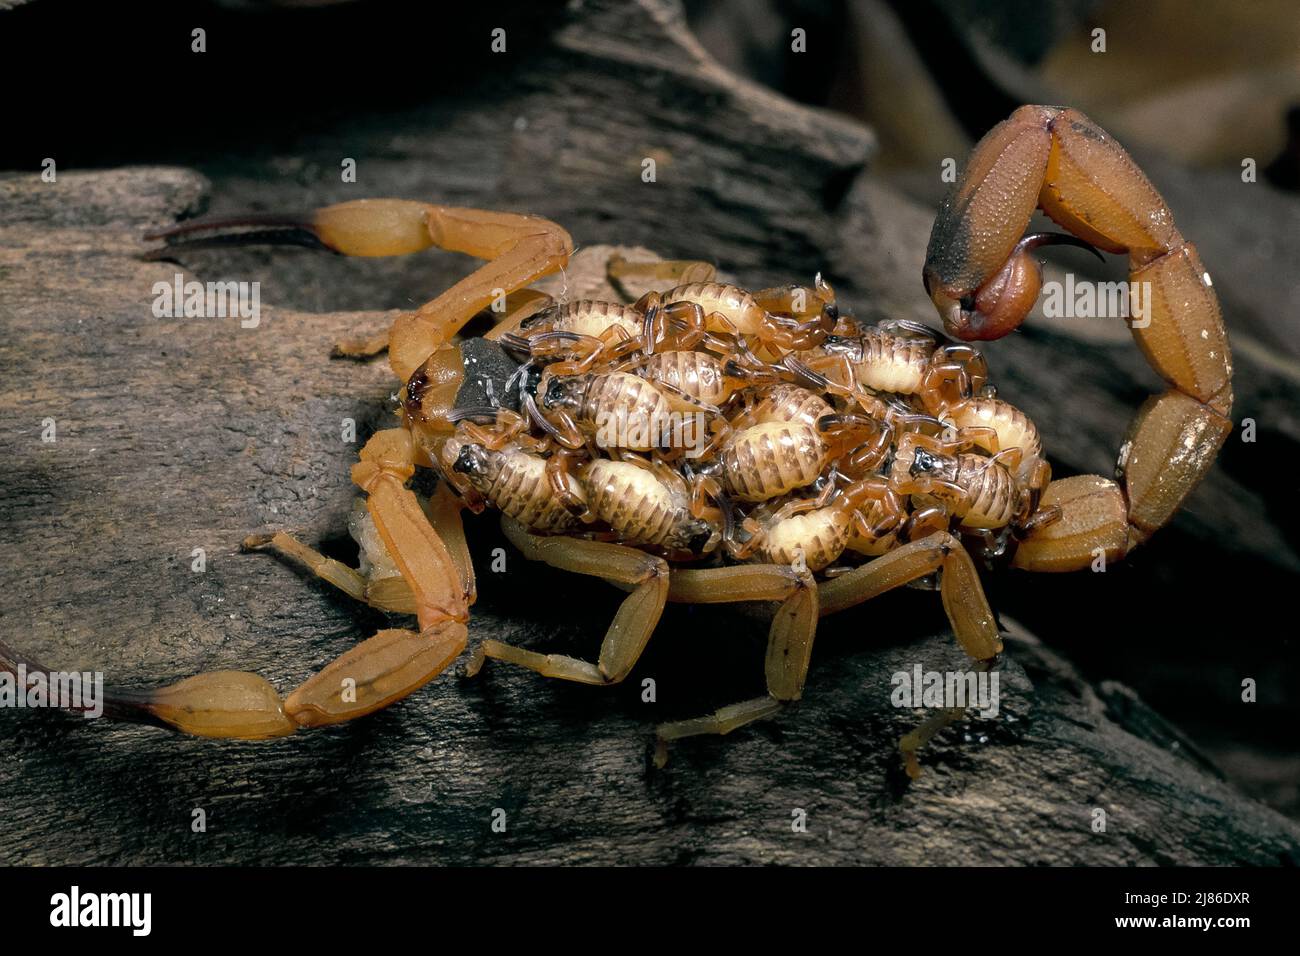 Brazilian yellow scorpion (Tityus serrulatus) carrying its young (pullus) on its back, Brazil Stock Photo